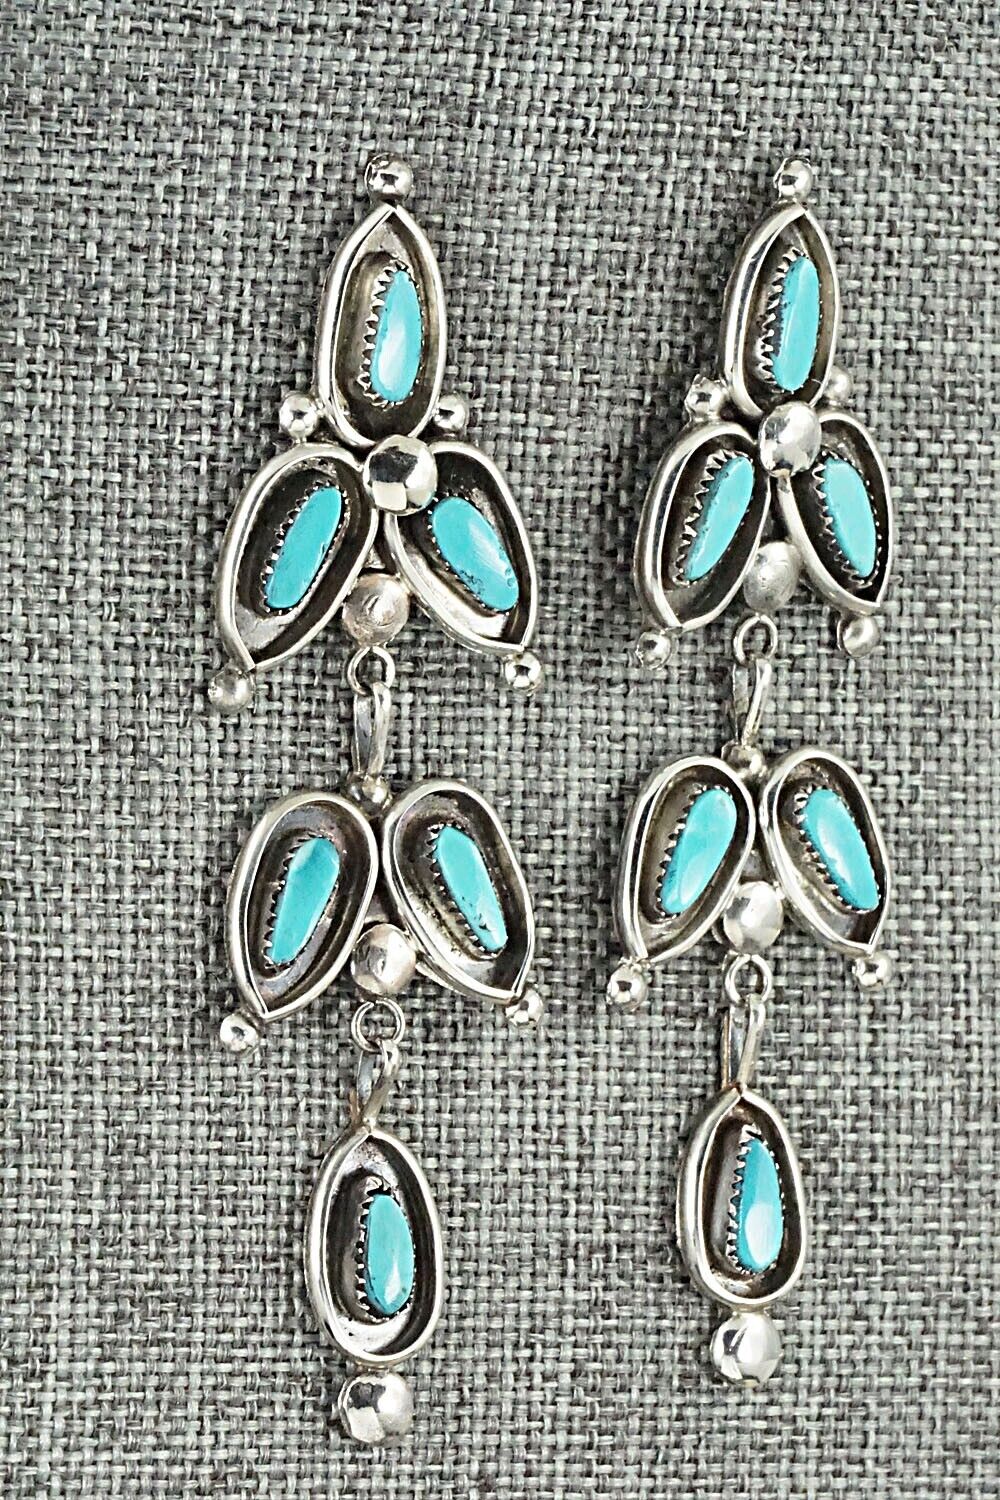 Turquoise & Sterling Silver Earrings - Viola Bobelu